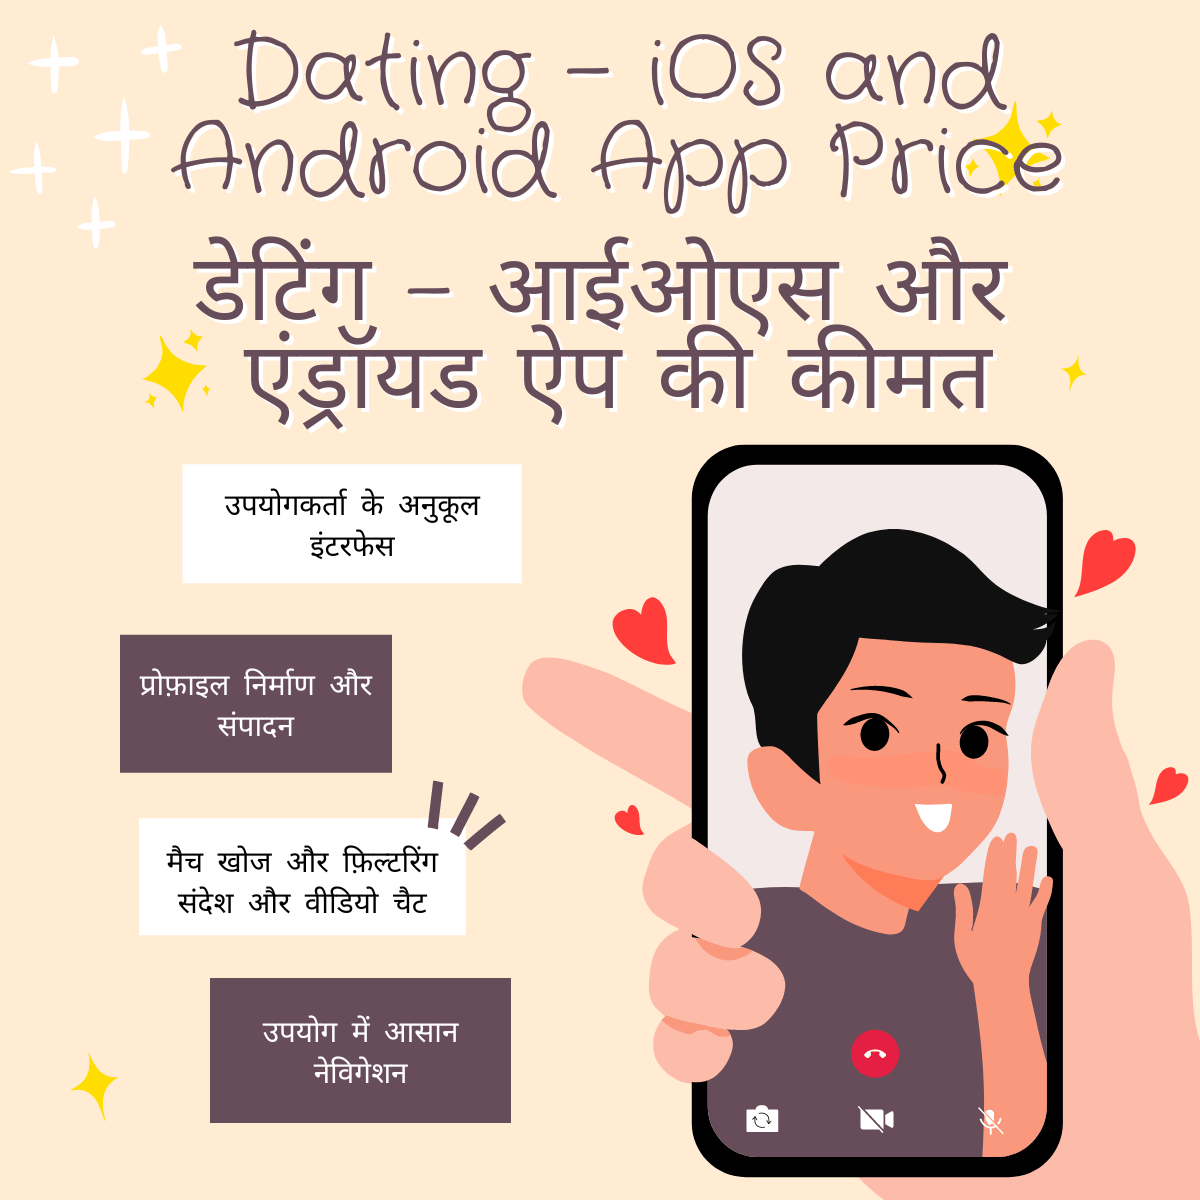 Dating - iOS and Android App Price

डेटिंग - आईओएस और एंड्रॉयड ऐप की कीमत